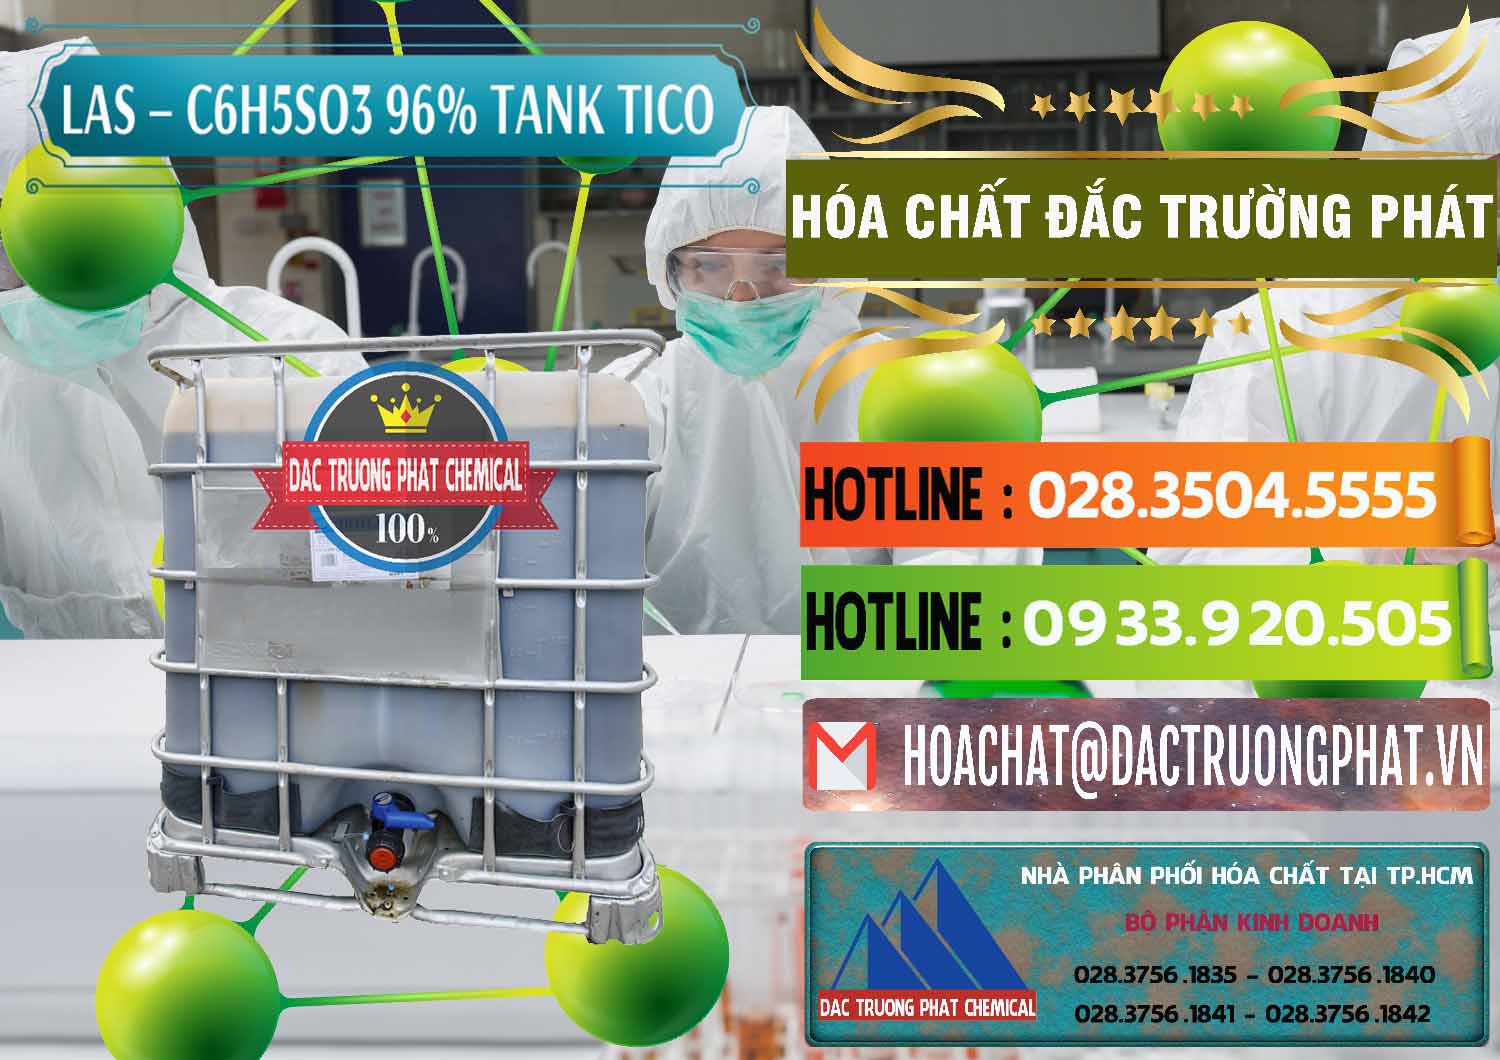 Công ty phân phối - bán Chất tạo bọt Las P Tico Tank IBC Bồn Việt Nam - 0488 - Công ty phân phối & bán hóa chất tại TP.HCM - cungcaphoachat.com.vn